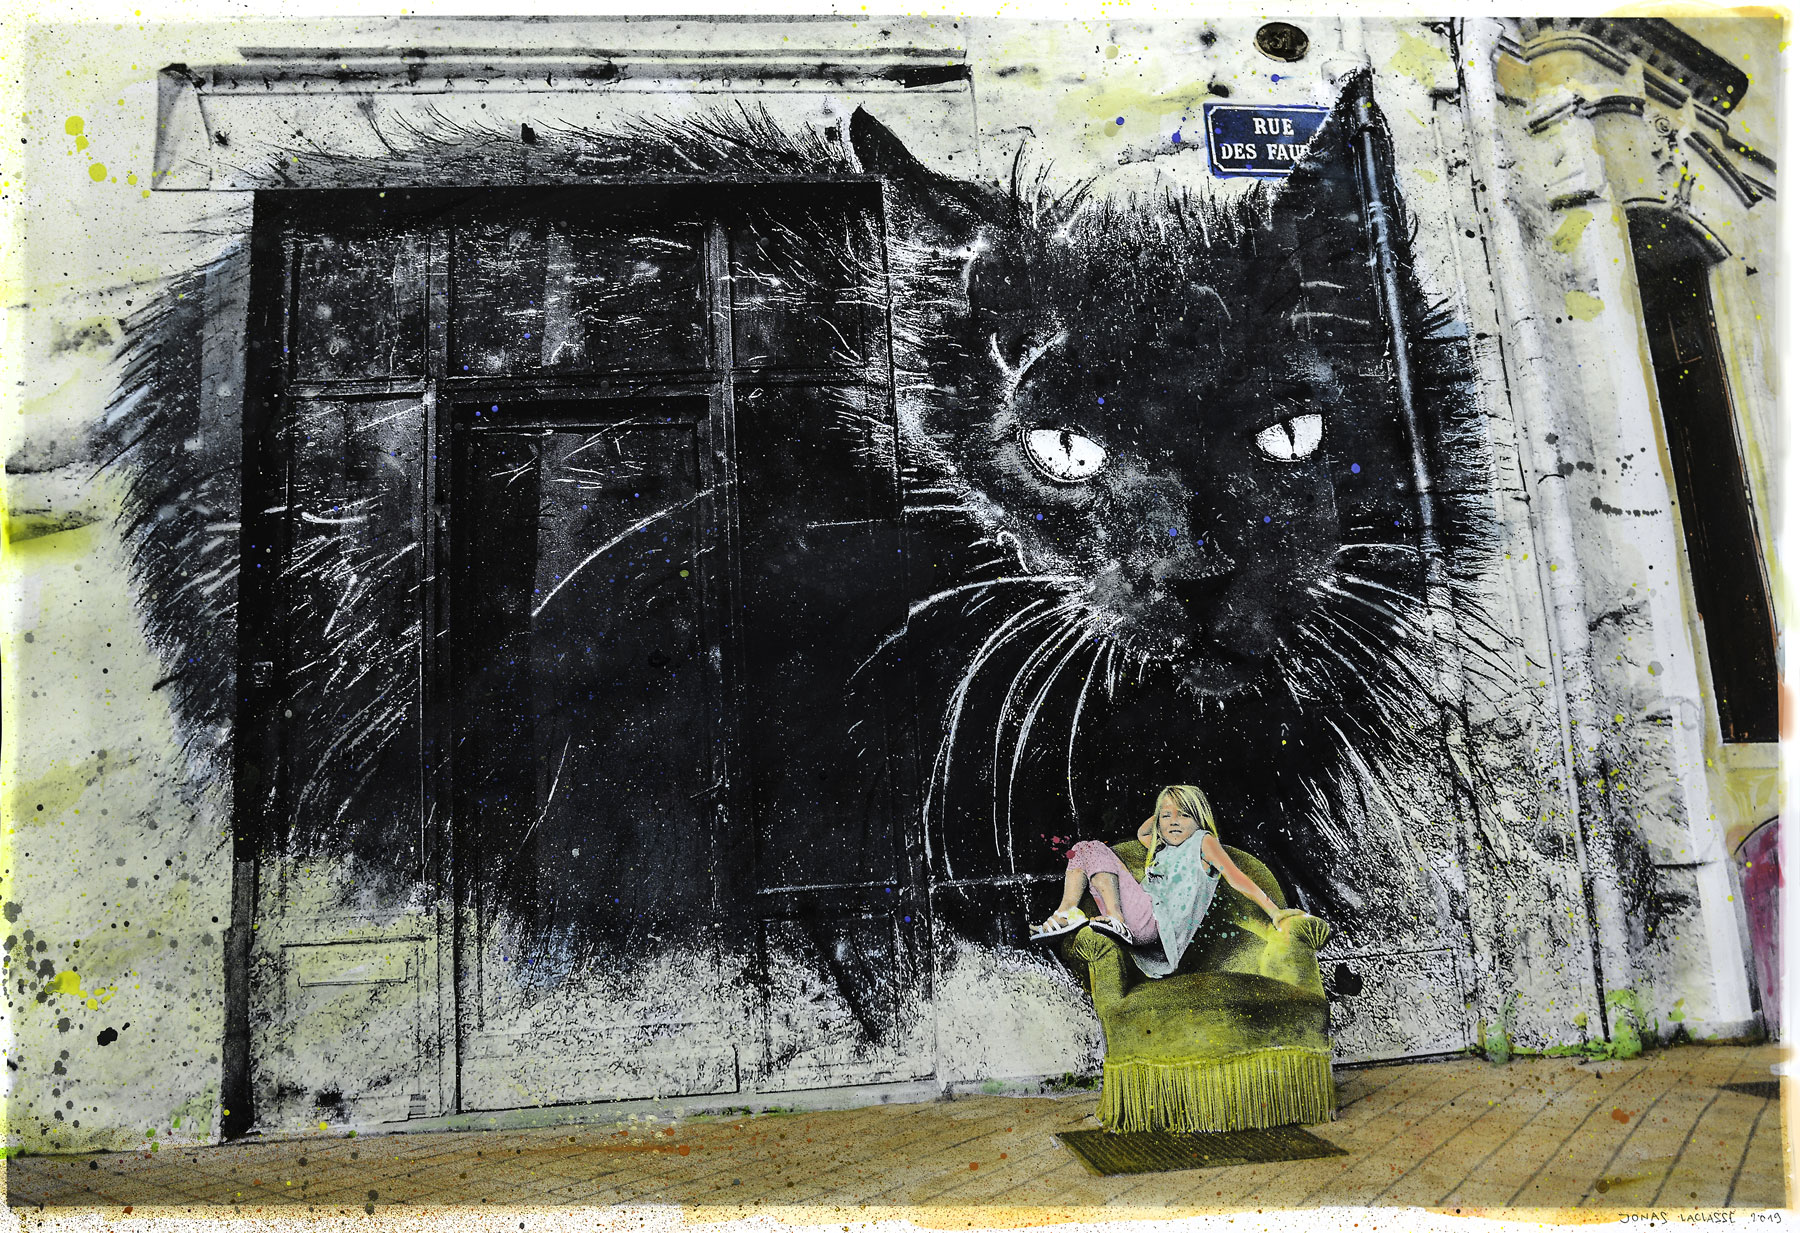 jonas laclasse - street art - photographie - painting -peinture - photography - cat - chat - bordeaux - saint michel